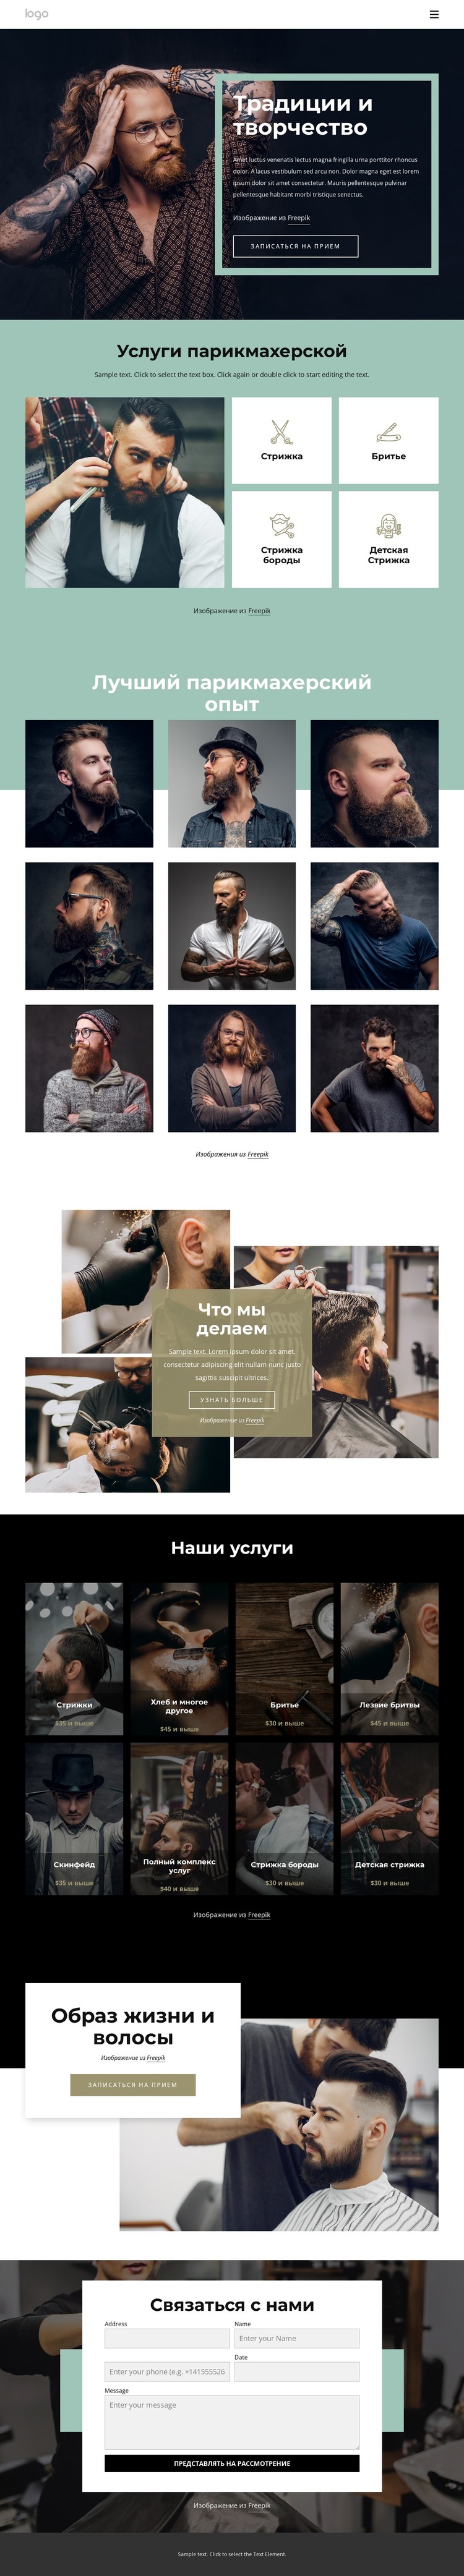 Общественный парикмахерский салон HTML шаблон